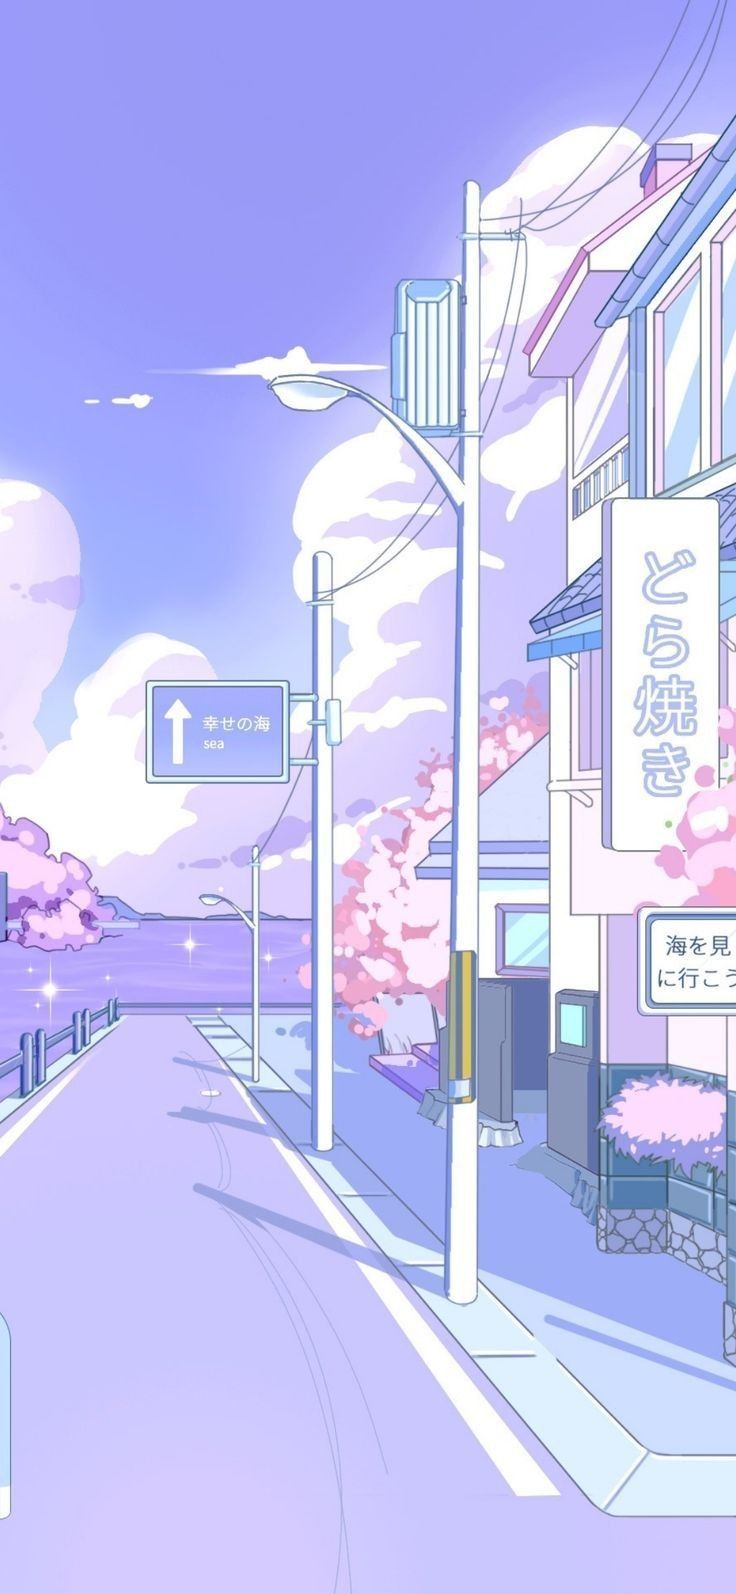 Aesthetic anime wallpaper